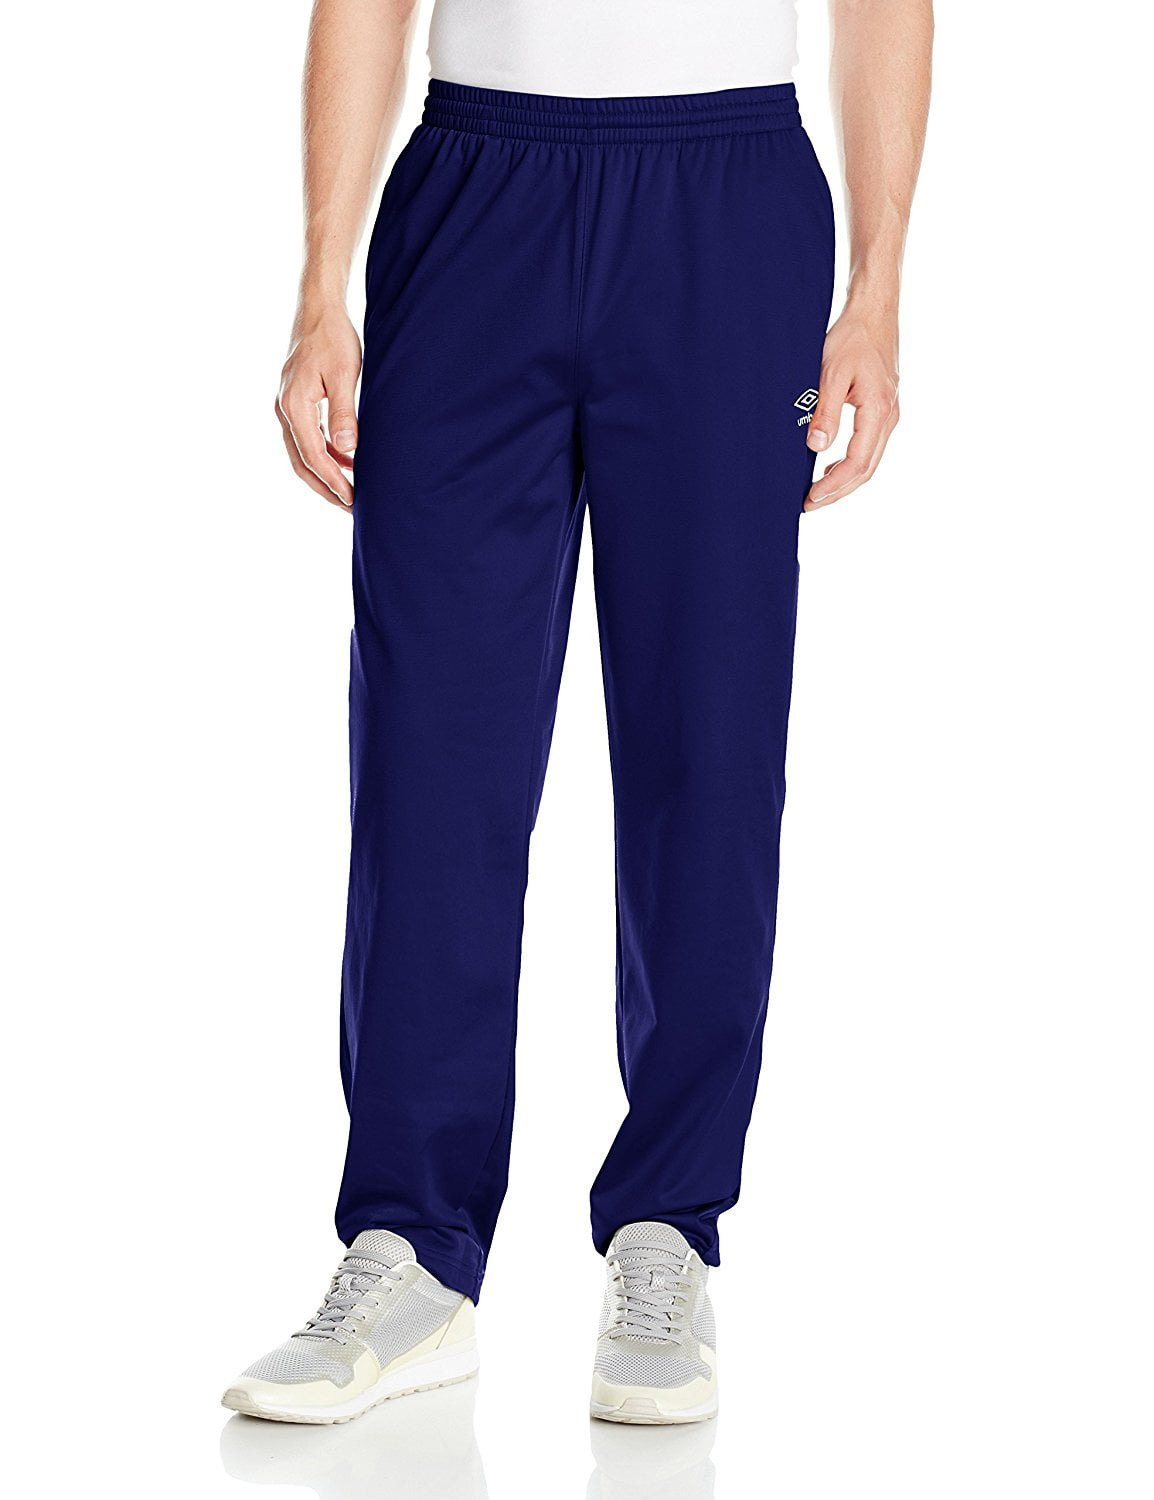 Umbro - Umbro Men's Classic Pants, Color Options - Walmart.com ...